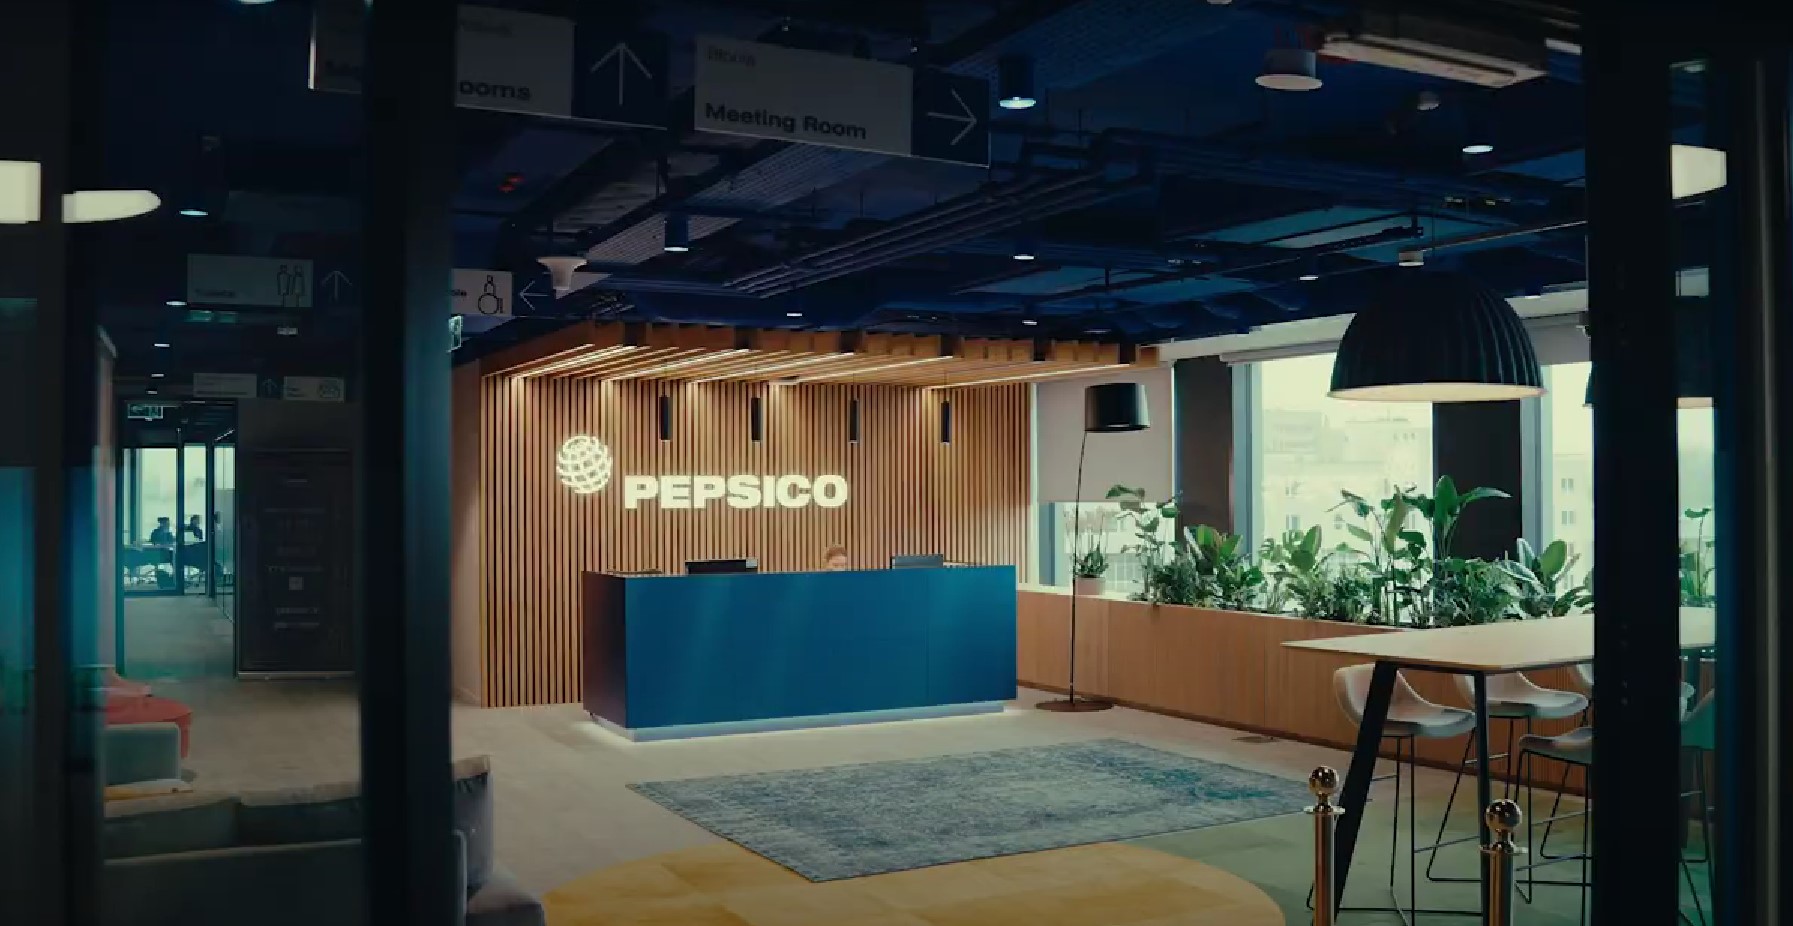 PepsiCo GBS - New Office in Kraków